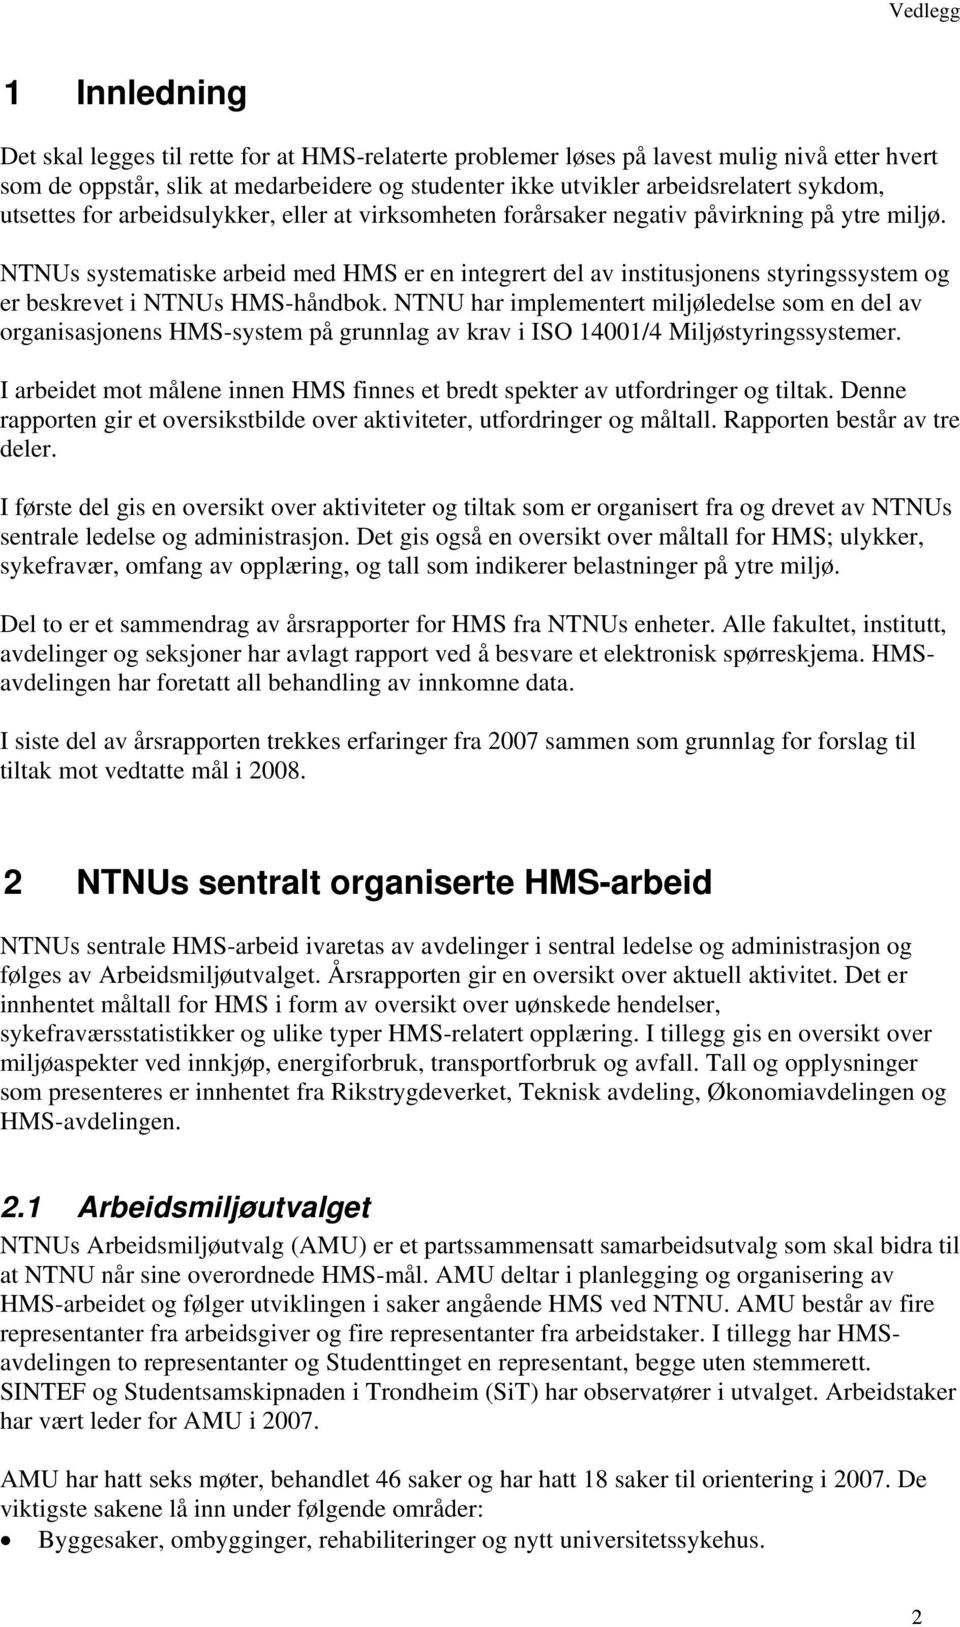 NTNUs systematiske arbeid med HMS er en integrert del av institusjonens styringssystem og er beskrevet i NTNUs HMS-håndbok.